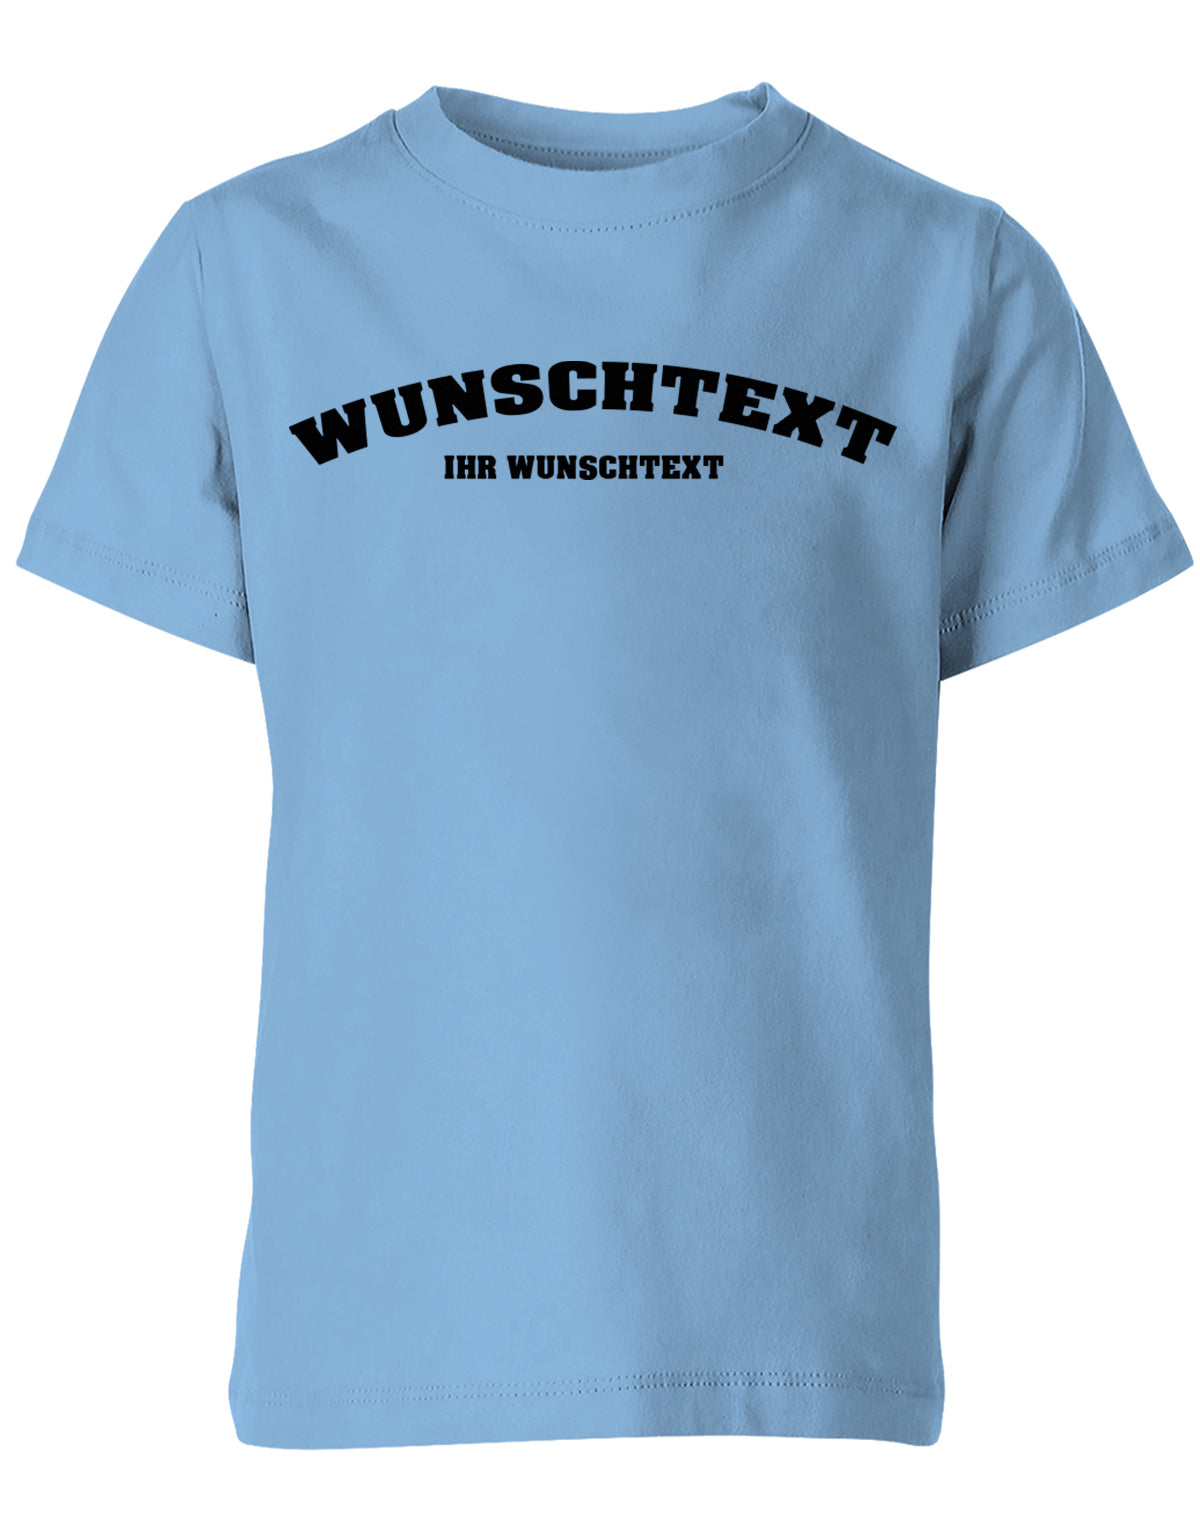 Kinder Tshirt mit Wunschtext.  Abgerundeter Text im Collage-Style. Hellblau